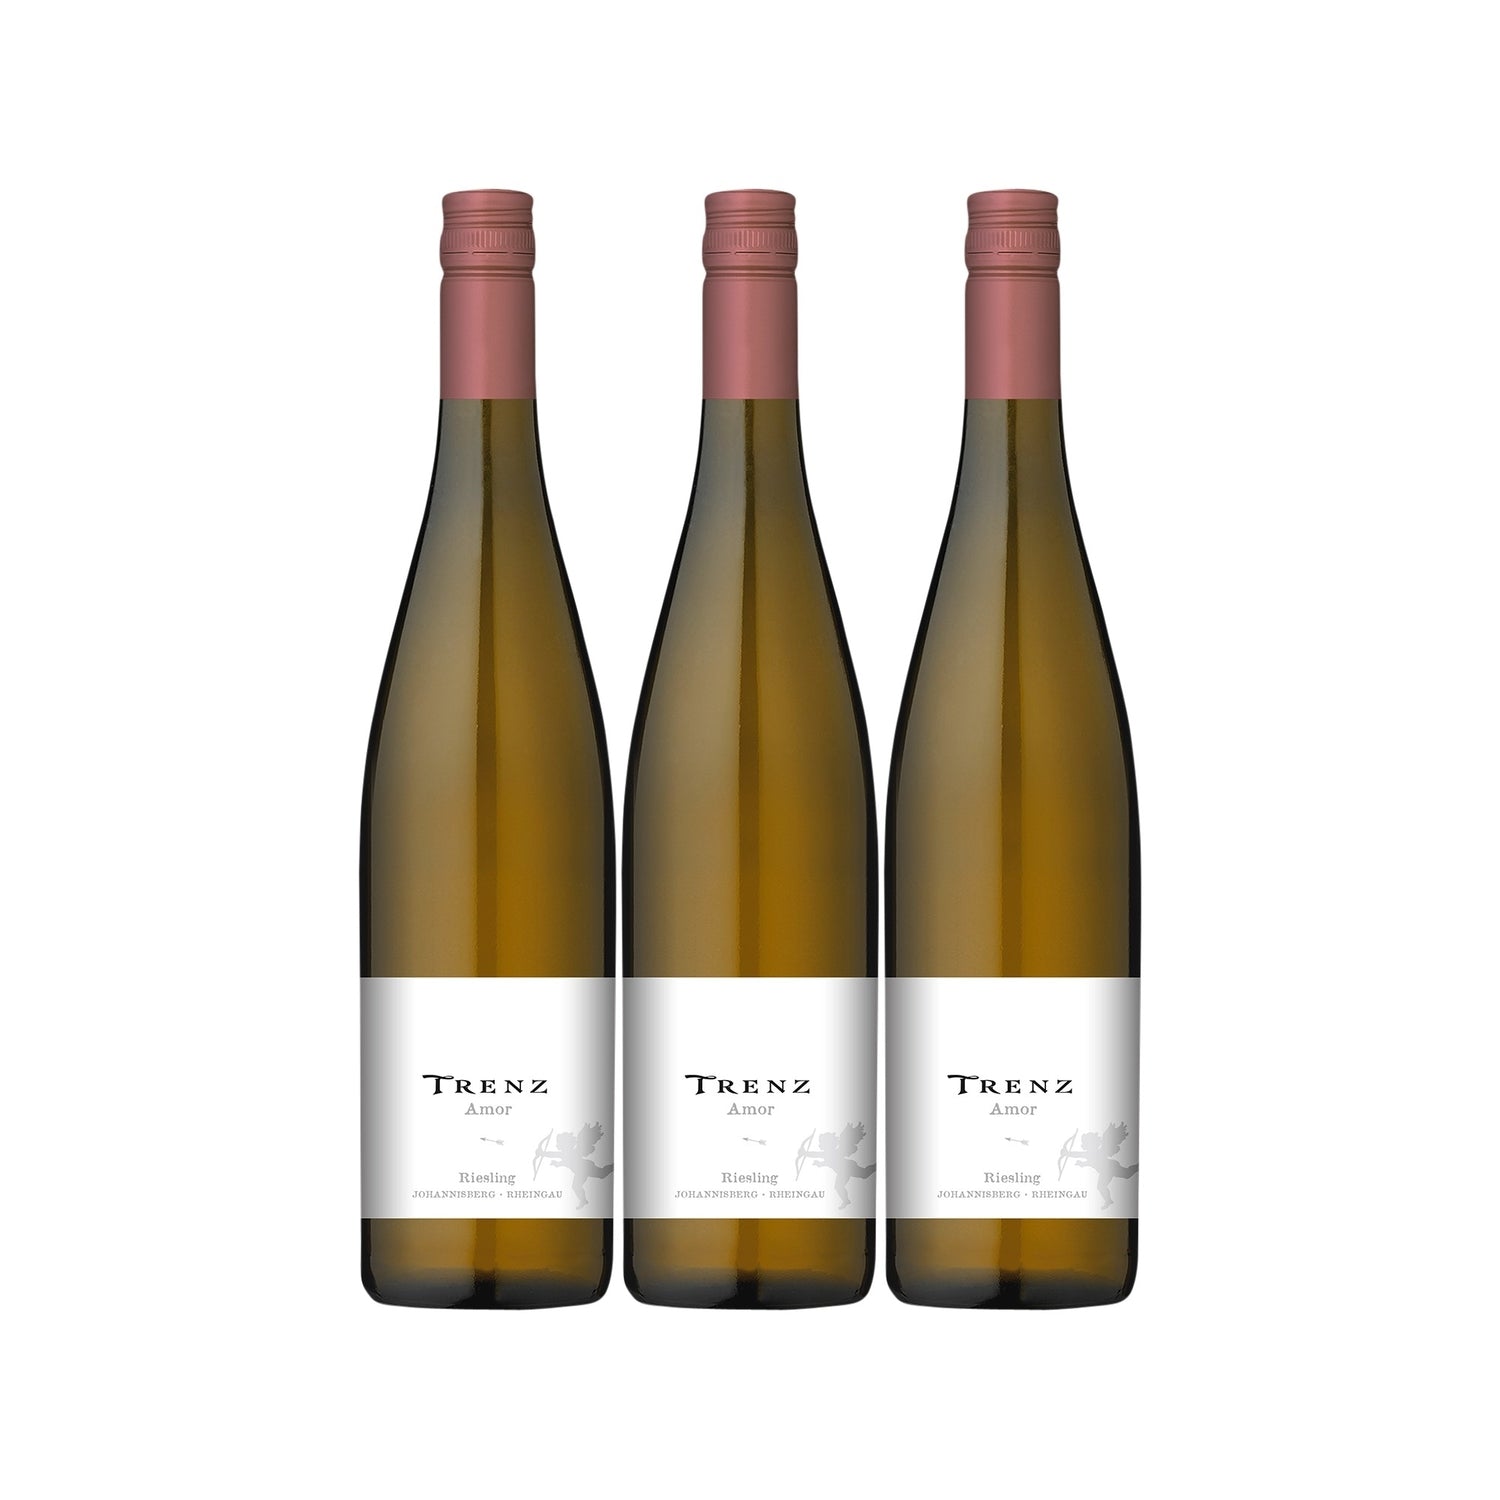 Trenz Amor Riesling Kabinett Weißwein Wein feinherb Deutschland (3 x 0.75l) - Versanel -